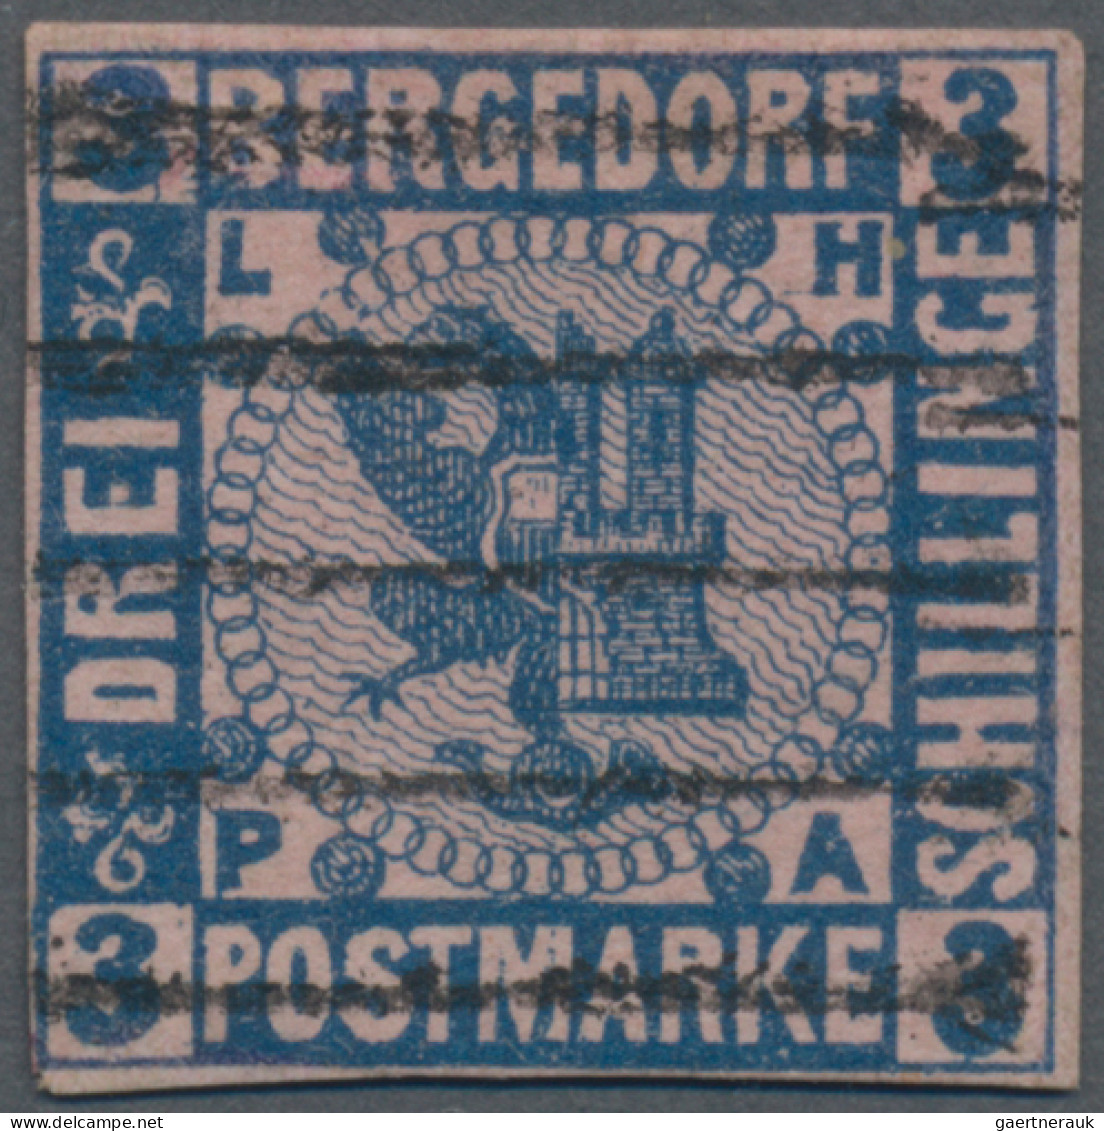 Bergedorf - Marken Und Briefe: 1861, 3 Sch. Dunkelultramarin Auf Mattrosa, Feins - Bergedorf